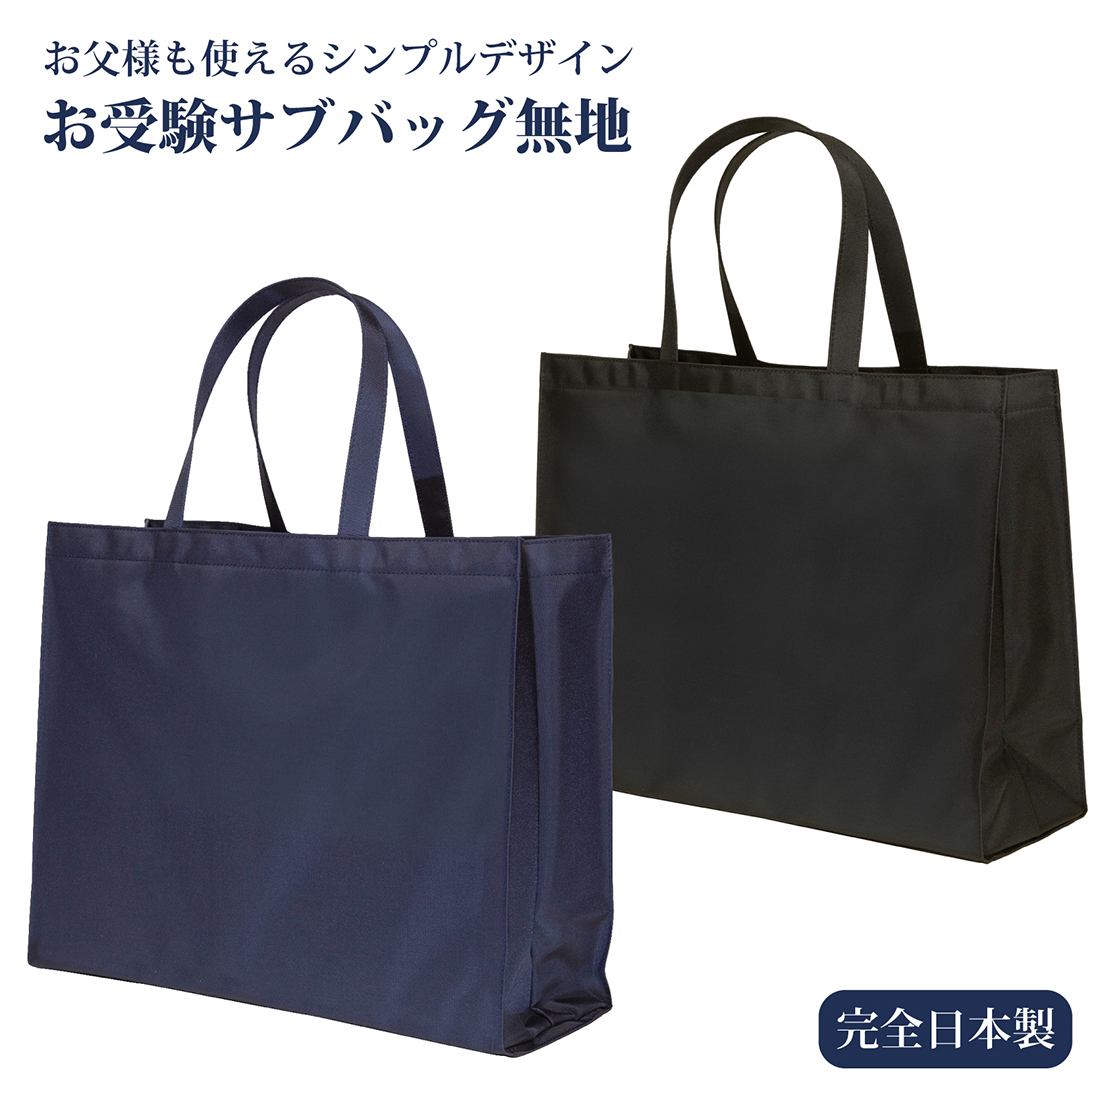 お受験サブバッグ お受験バッグ 完全日本製 横型 お父様も使える無地サブバッグ 紺 黒 お受験スリッパ エレガンテポポ